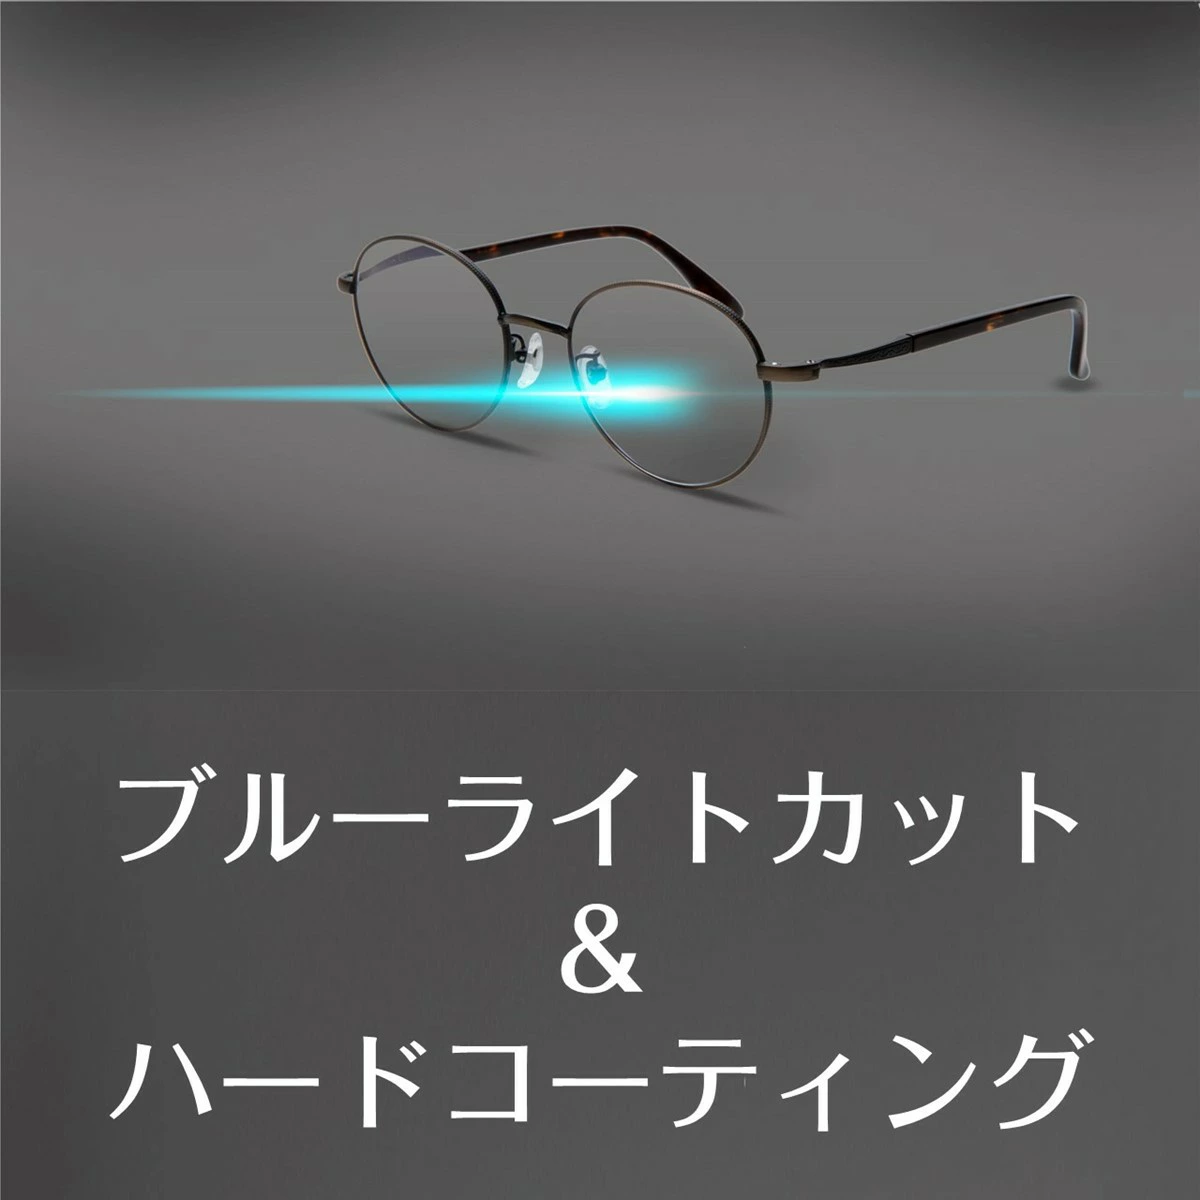 ピントグラス 正規販売店 中度 pint glasses 1年保証 TVCM シニア 